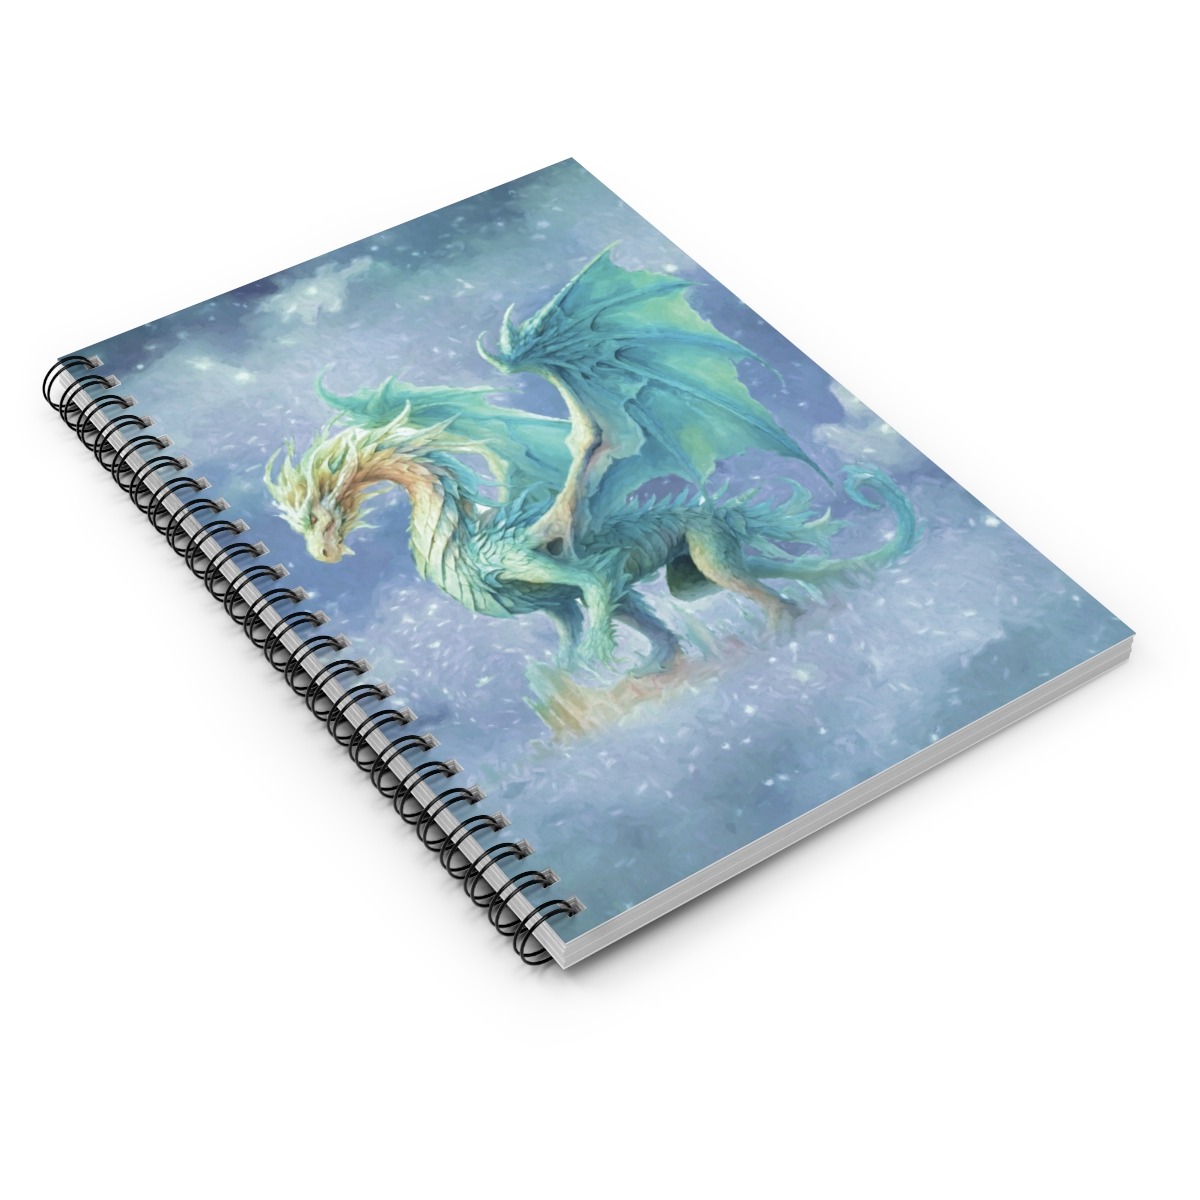 Dragon Spiral Notebook